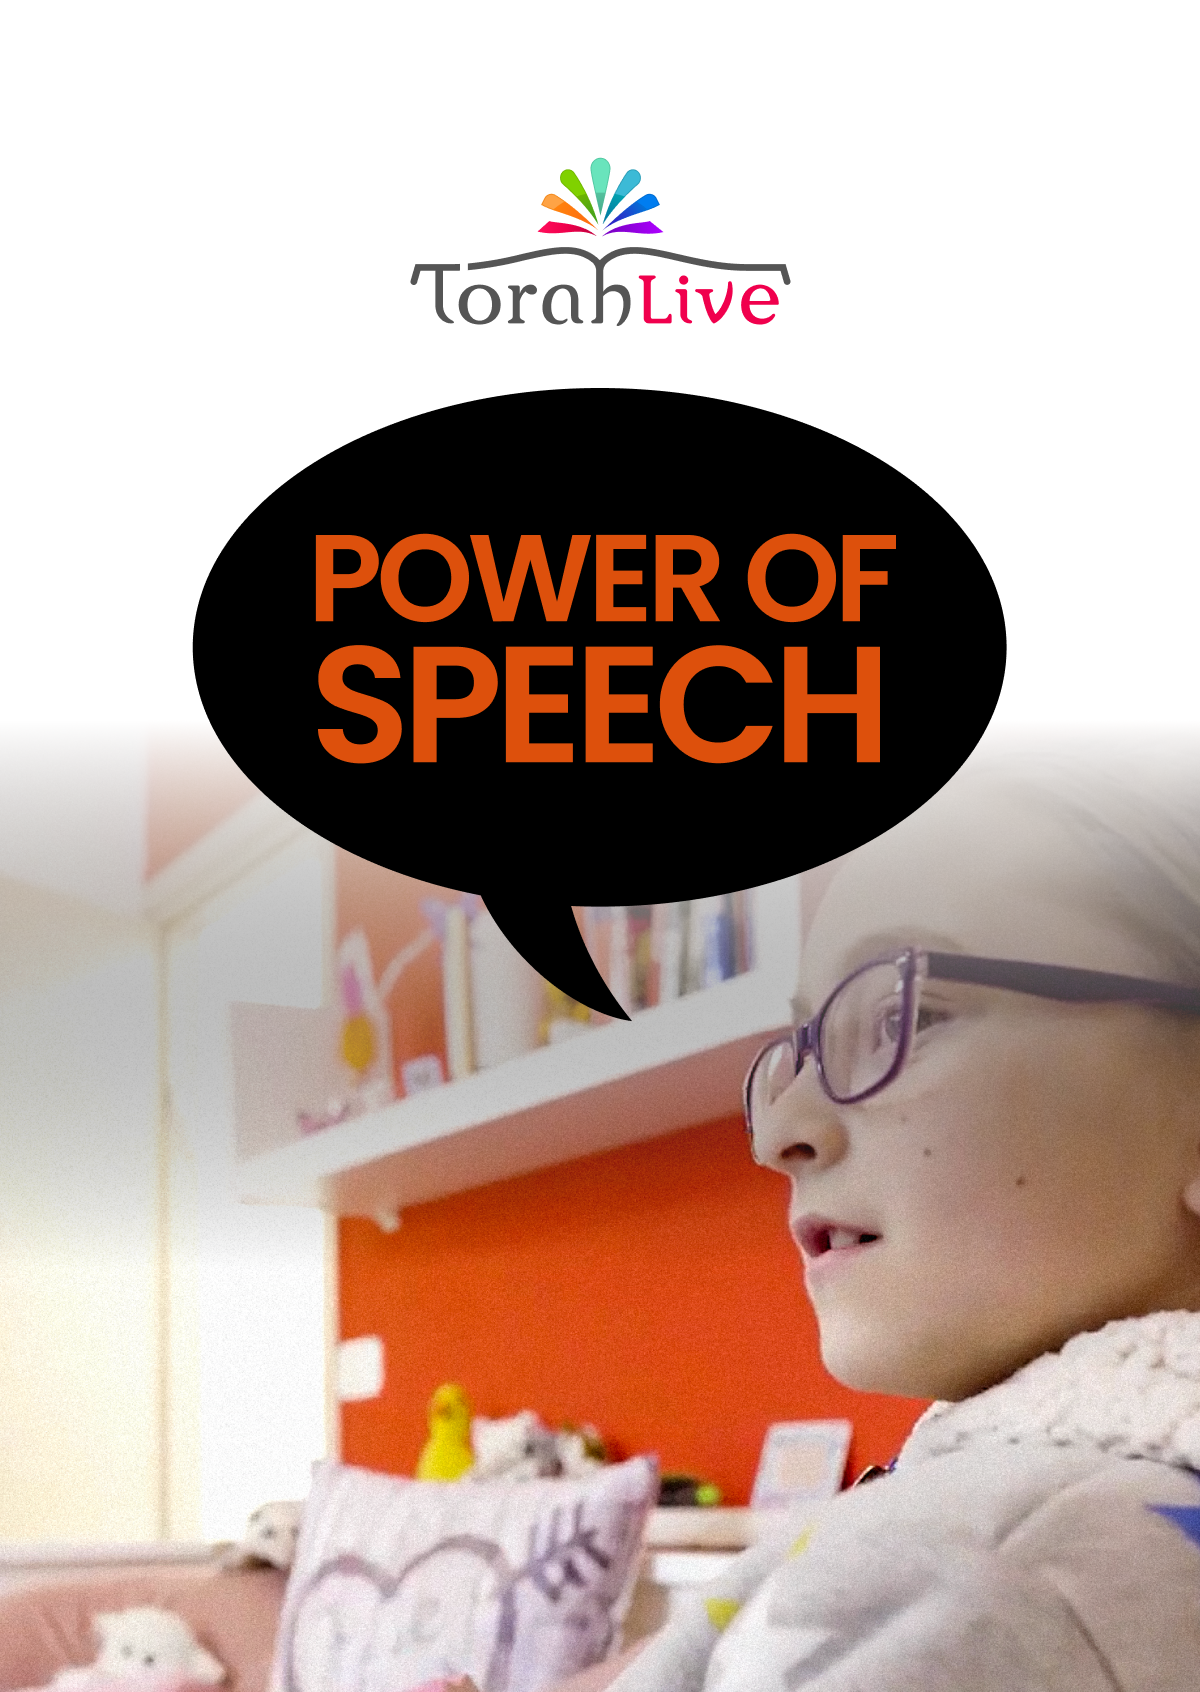 Torah Live - Power of Speech (Video)